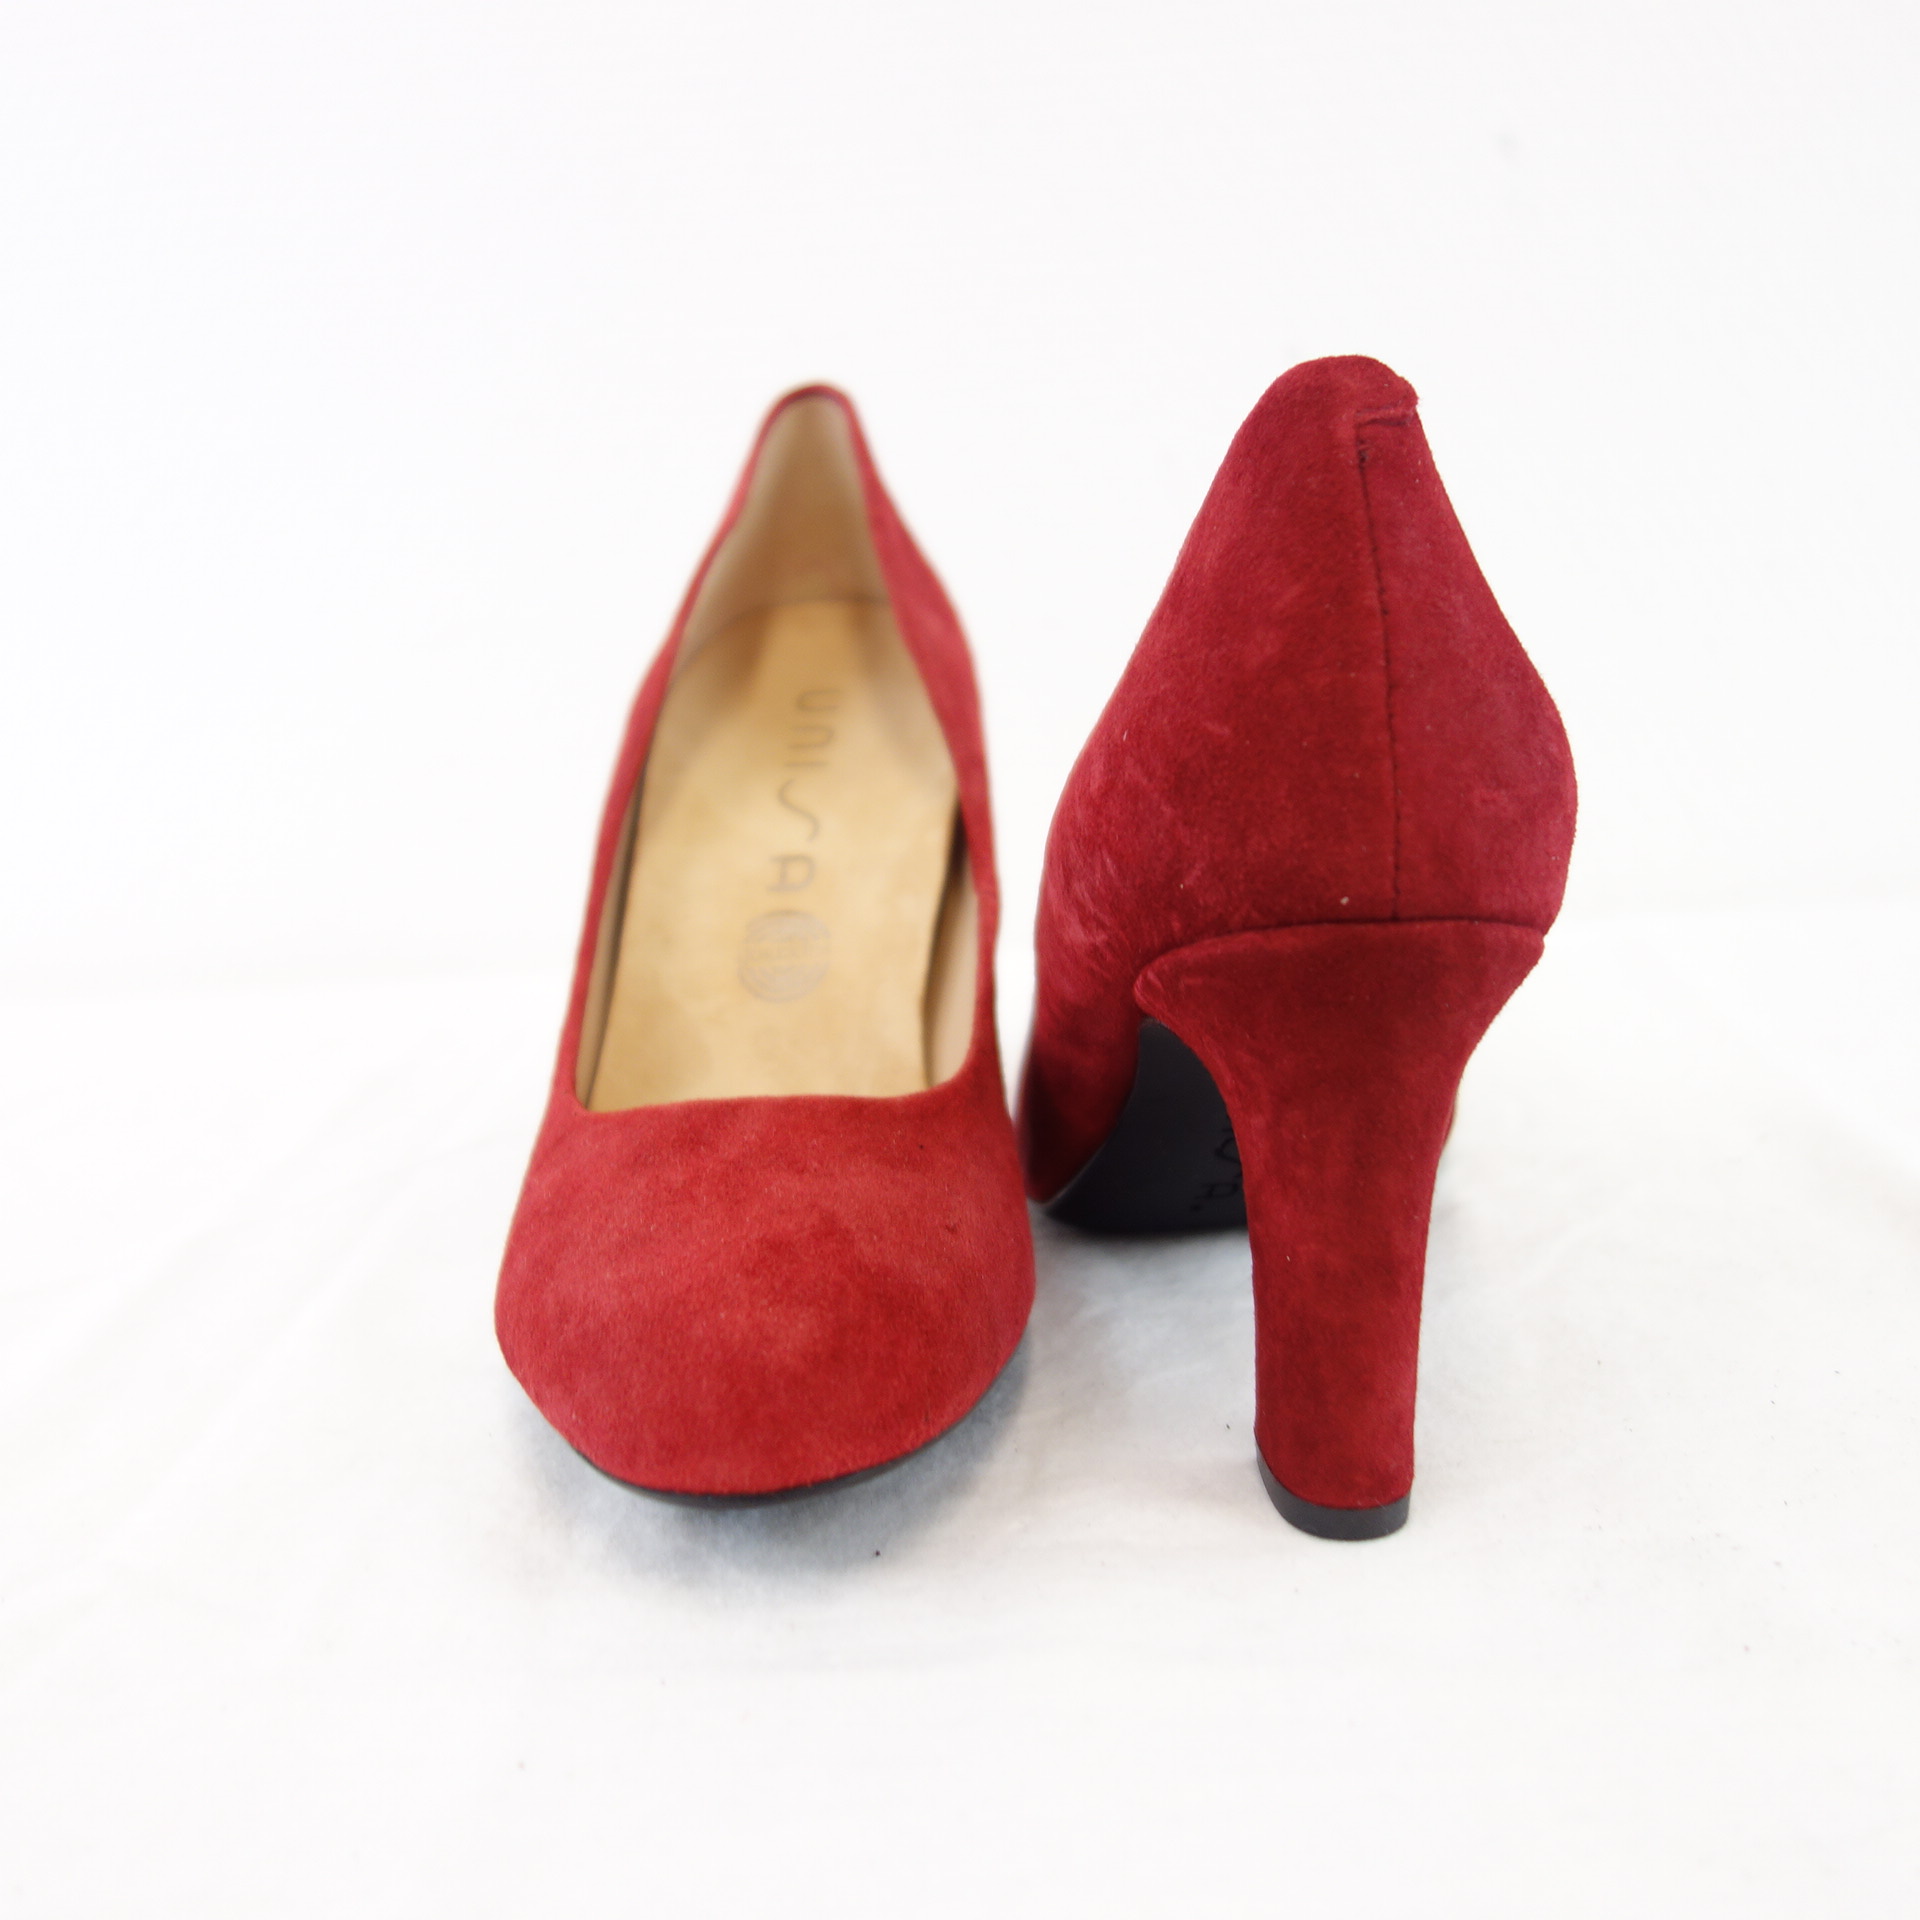 UNISA Bequeme Damen Schuhe Pumps Rot Wildleder Modell Umis Blockabsatz